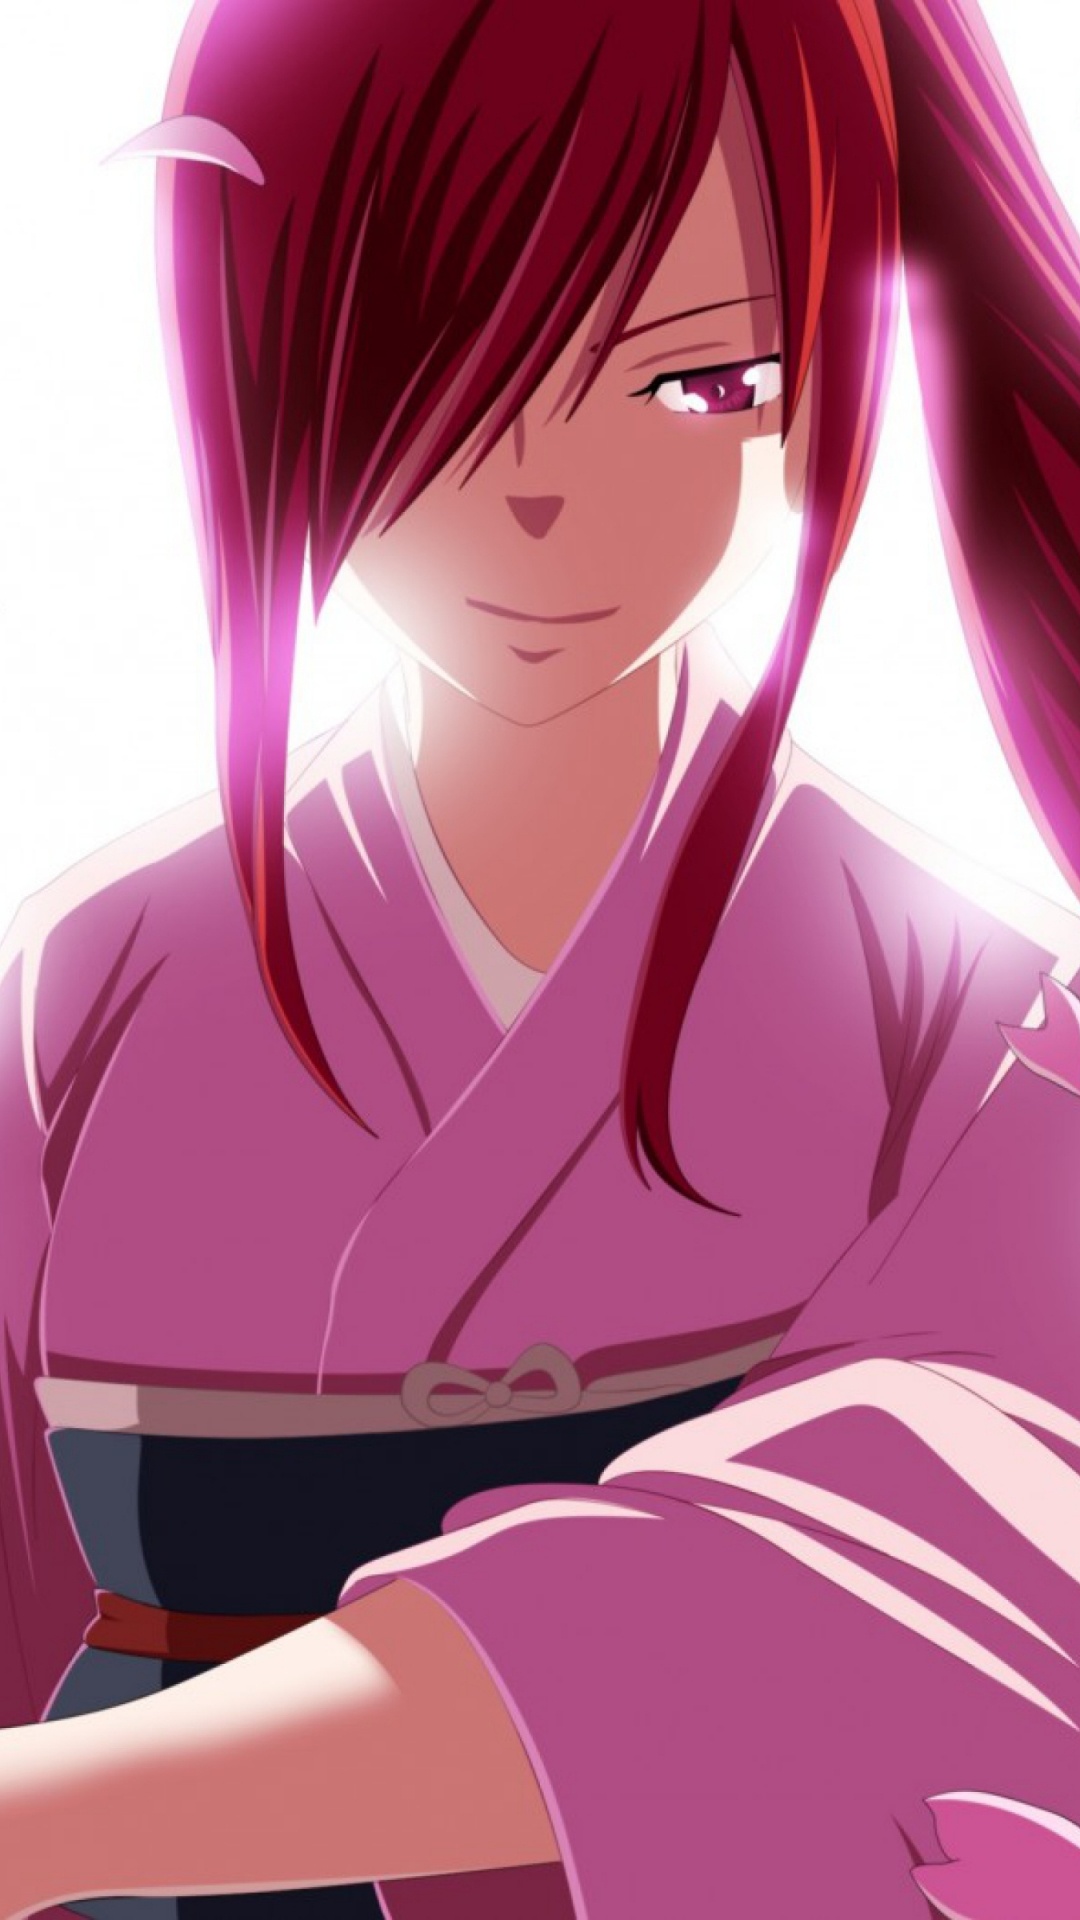 Rothaariger Männlicher Anime-Charakter. Wallpaper in 1080x1920 Resolution